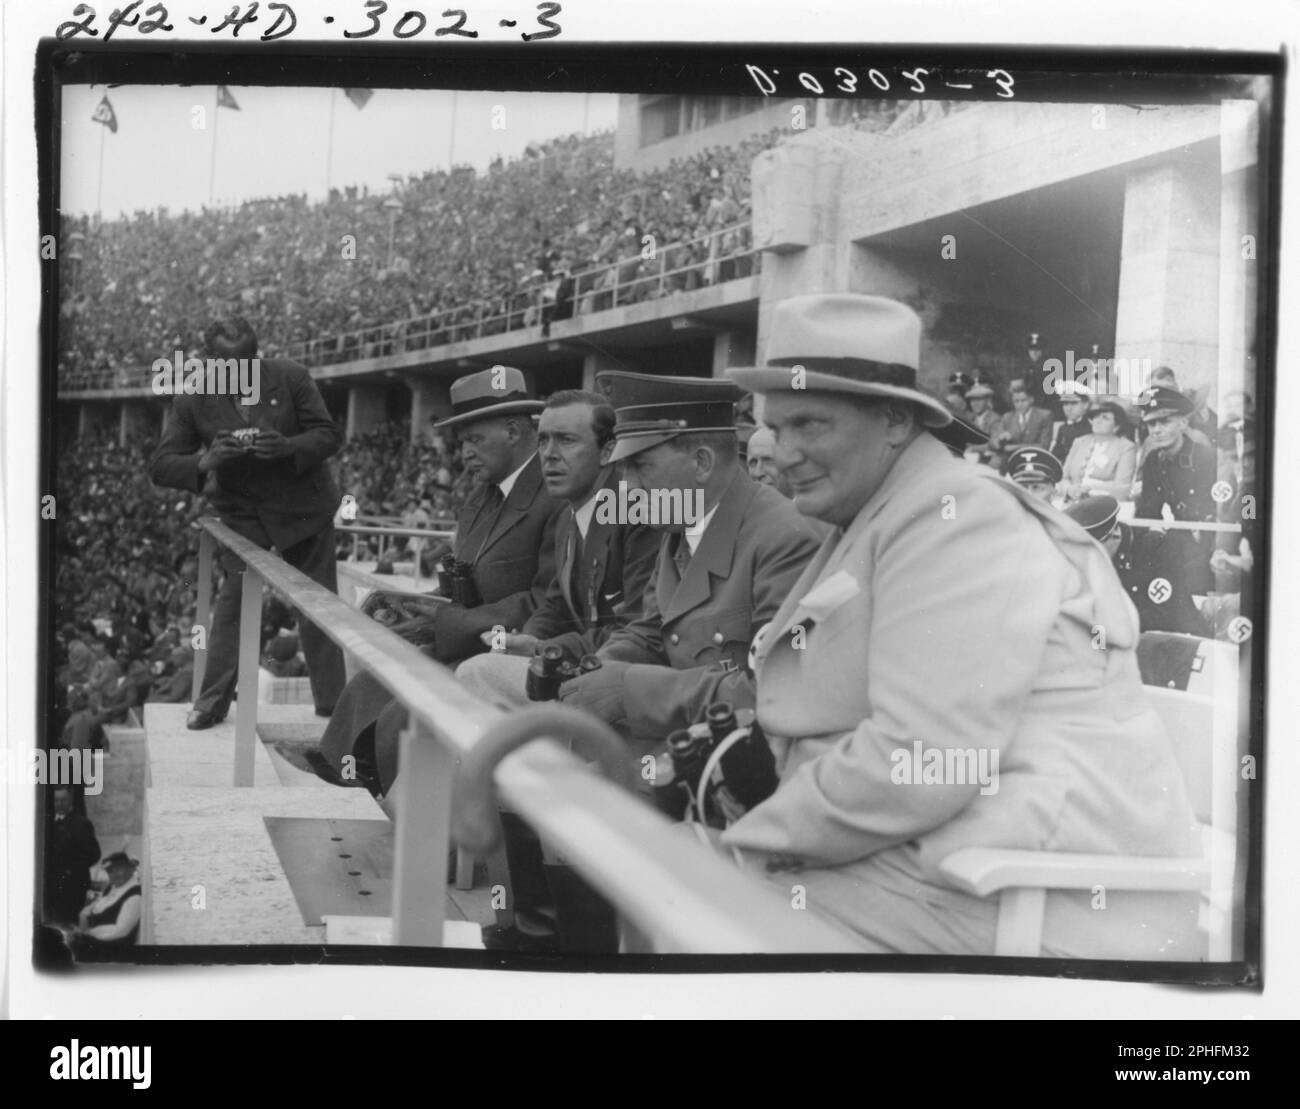 Un fotografo non identificato (in piedi a sinistra) scatta una foto mentre Adolf Hitler e altri funzionari nazisti tra cui Herman Goering (all'estrema destra) guardano i Giochi Olimpici dal rostro dello stadio, Berlino, Germania, 8/1936. (Foto di National Archives and Records Administration Foto Stock